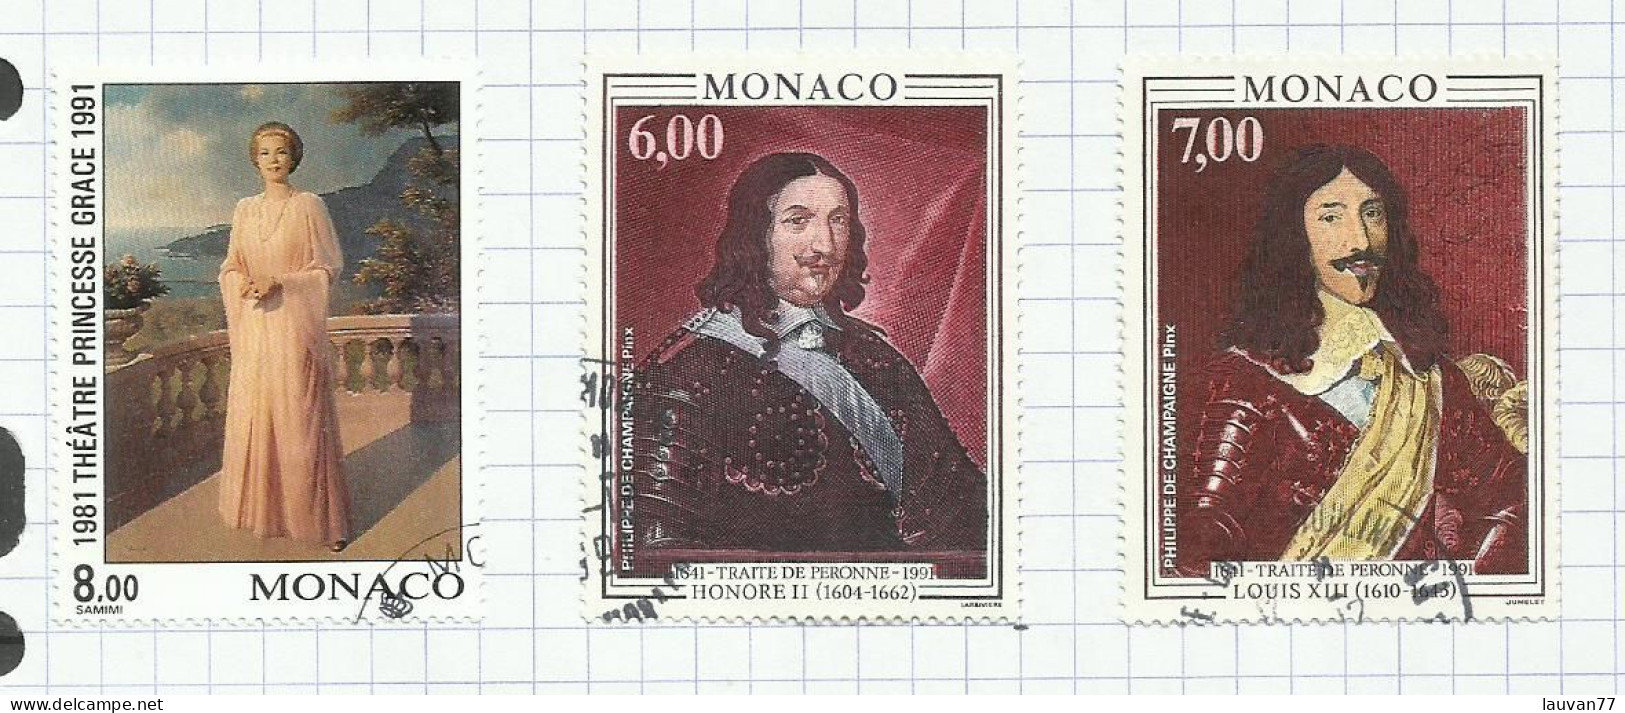 Monaco N°1786 à 1788 Cote 10.85€ - Gebraucht